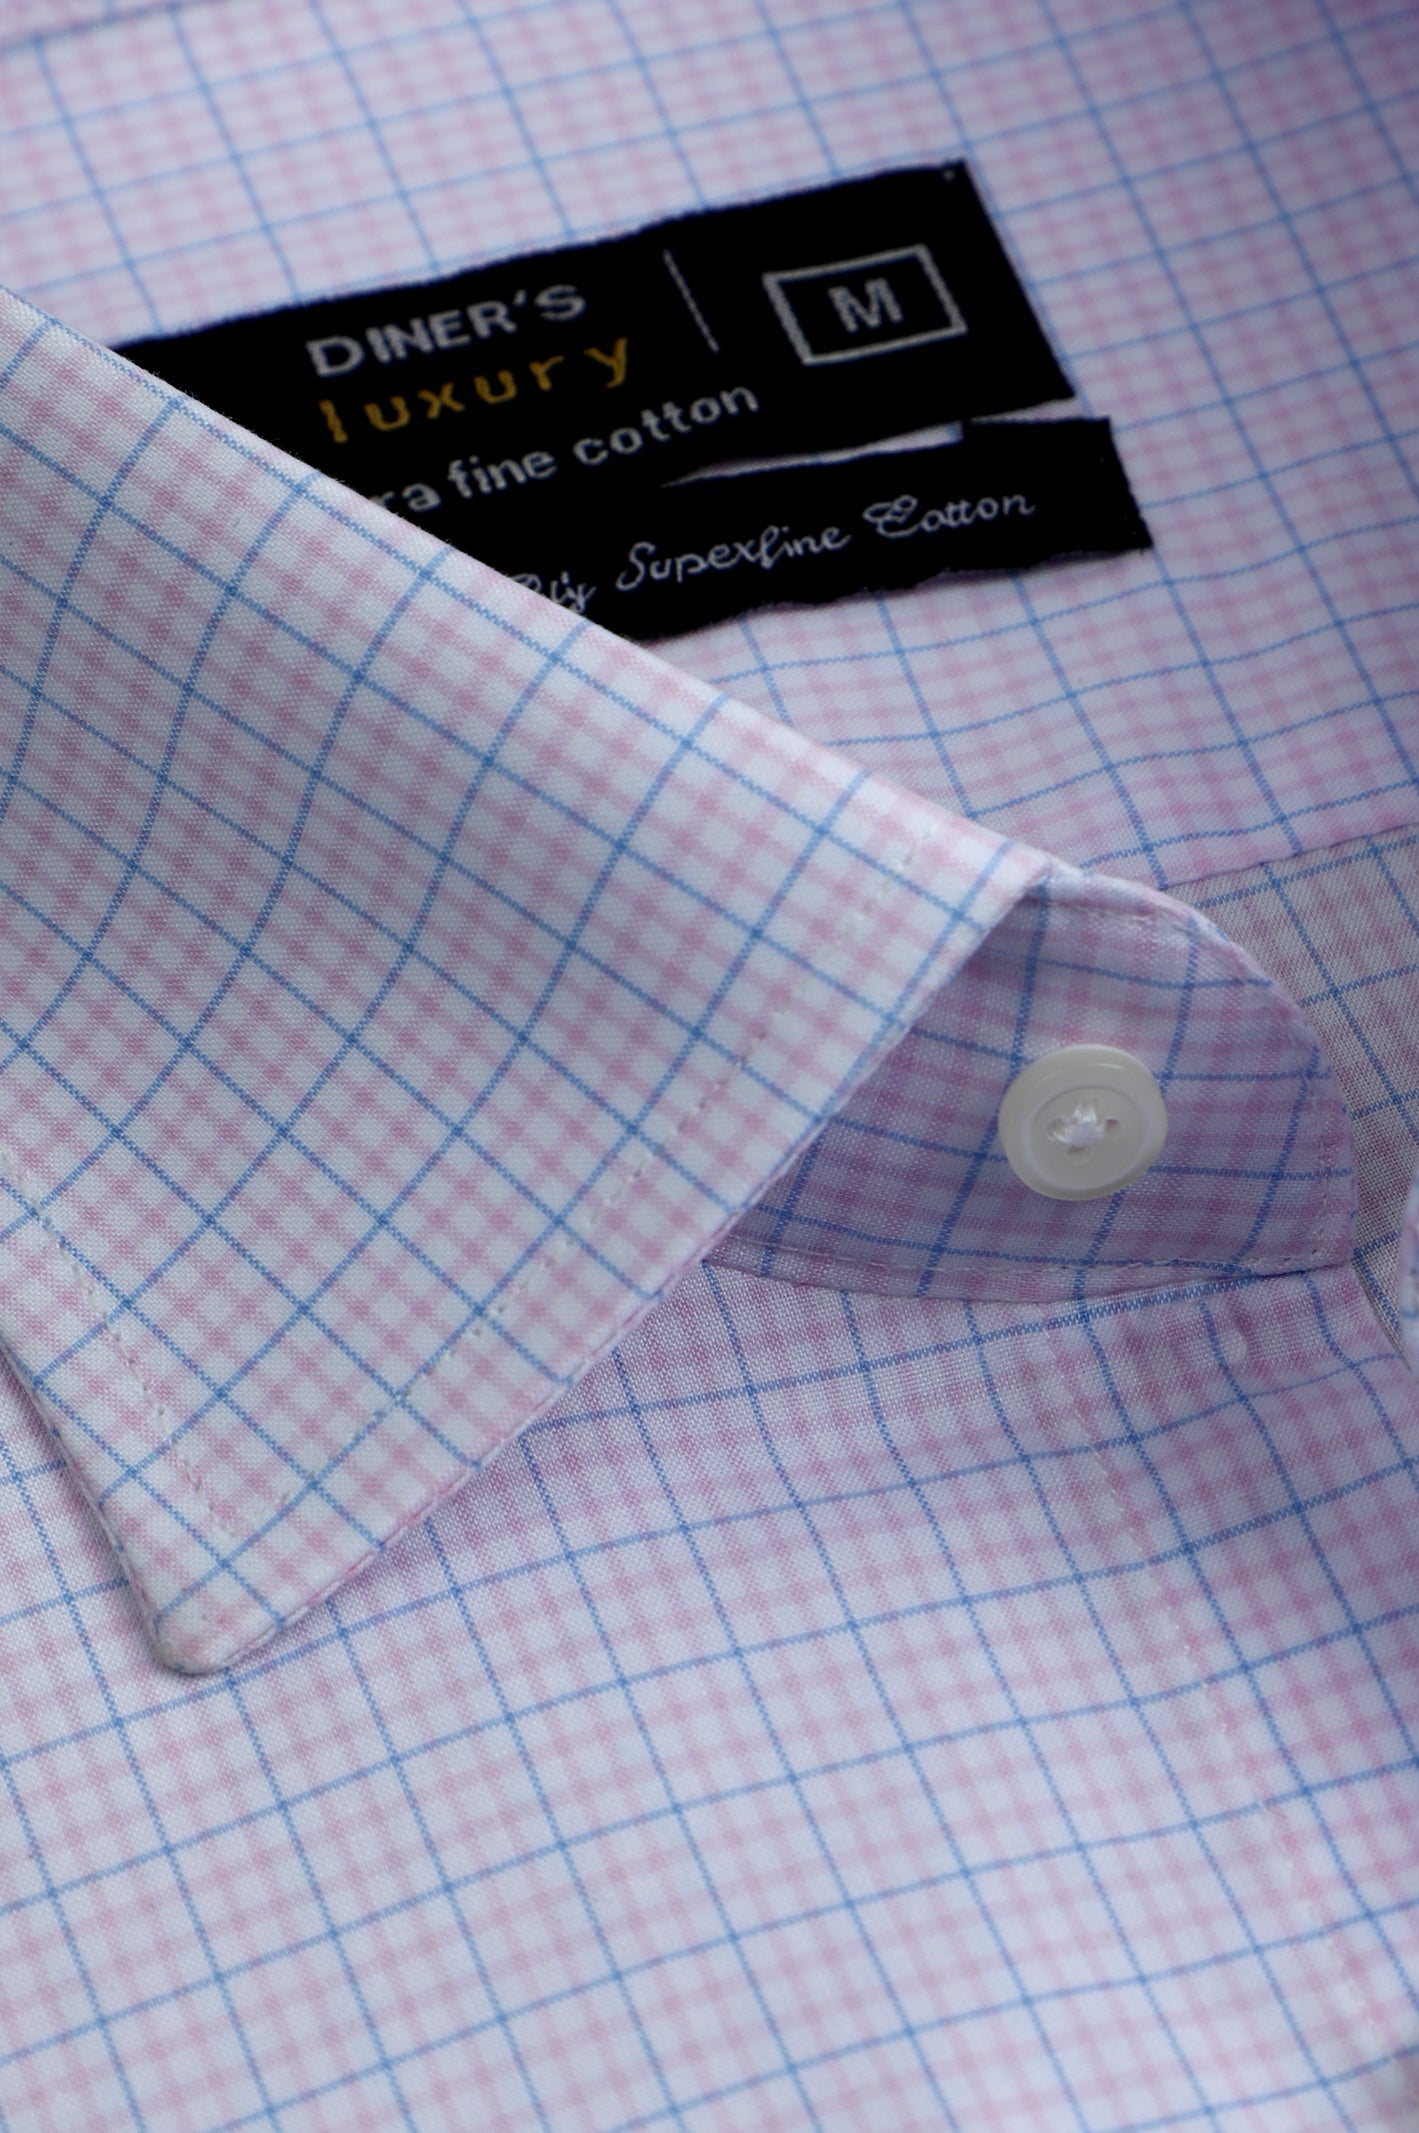 Formal Luxury Shirt SKU: AD28466-L-PINK (Half Sleeves) - Diners